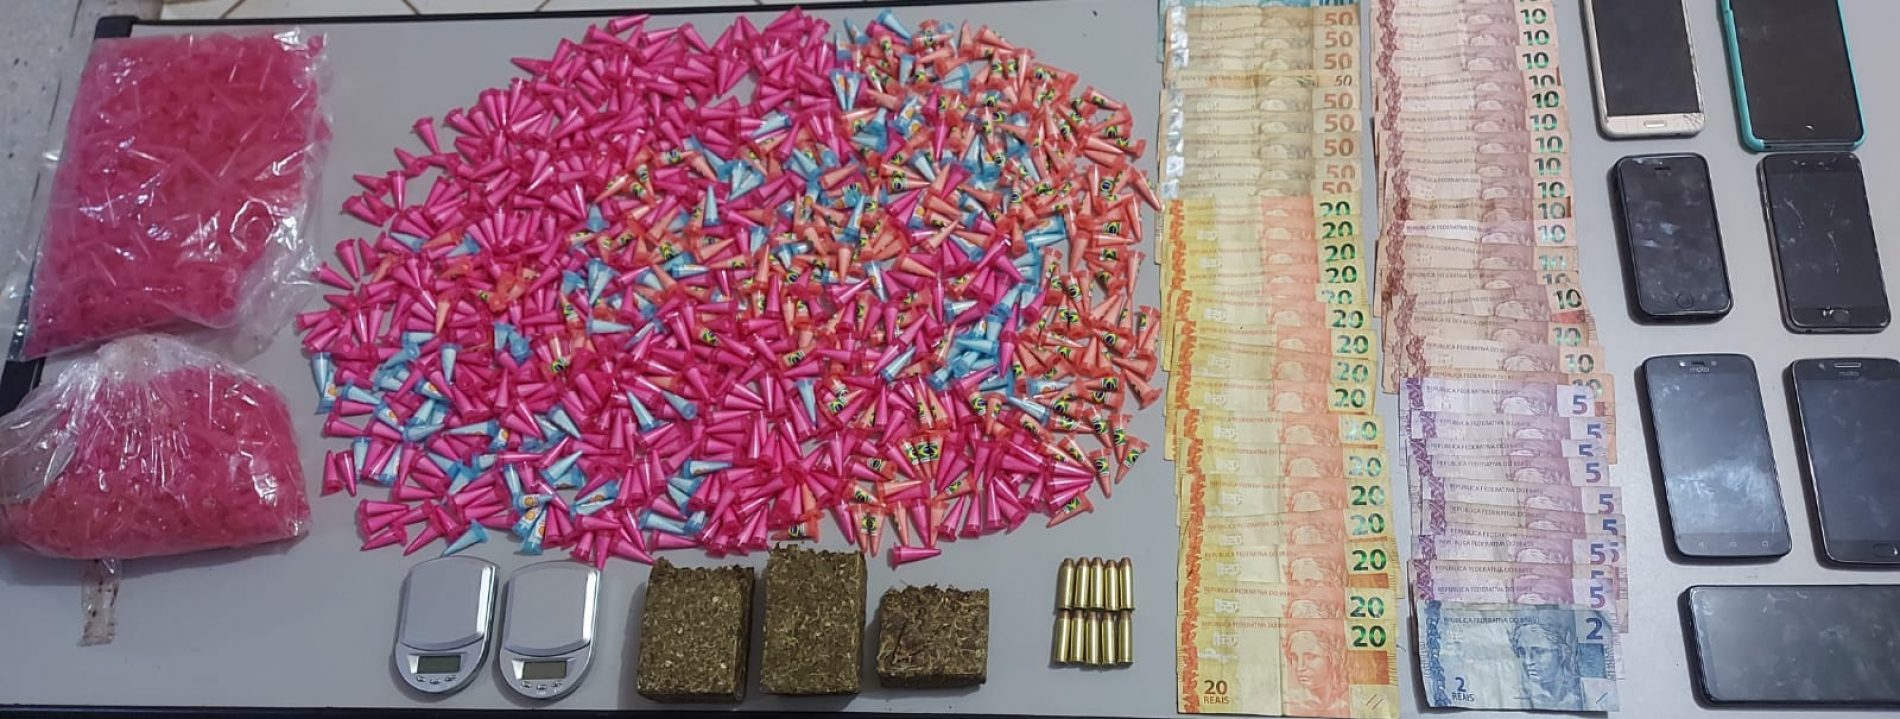 BARRETOS: Operação policial prende quatro pessoas, apreende um quilo e meio de drogas, munições e outros objetos no “Barretos 2”